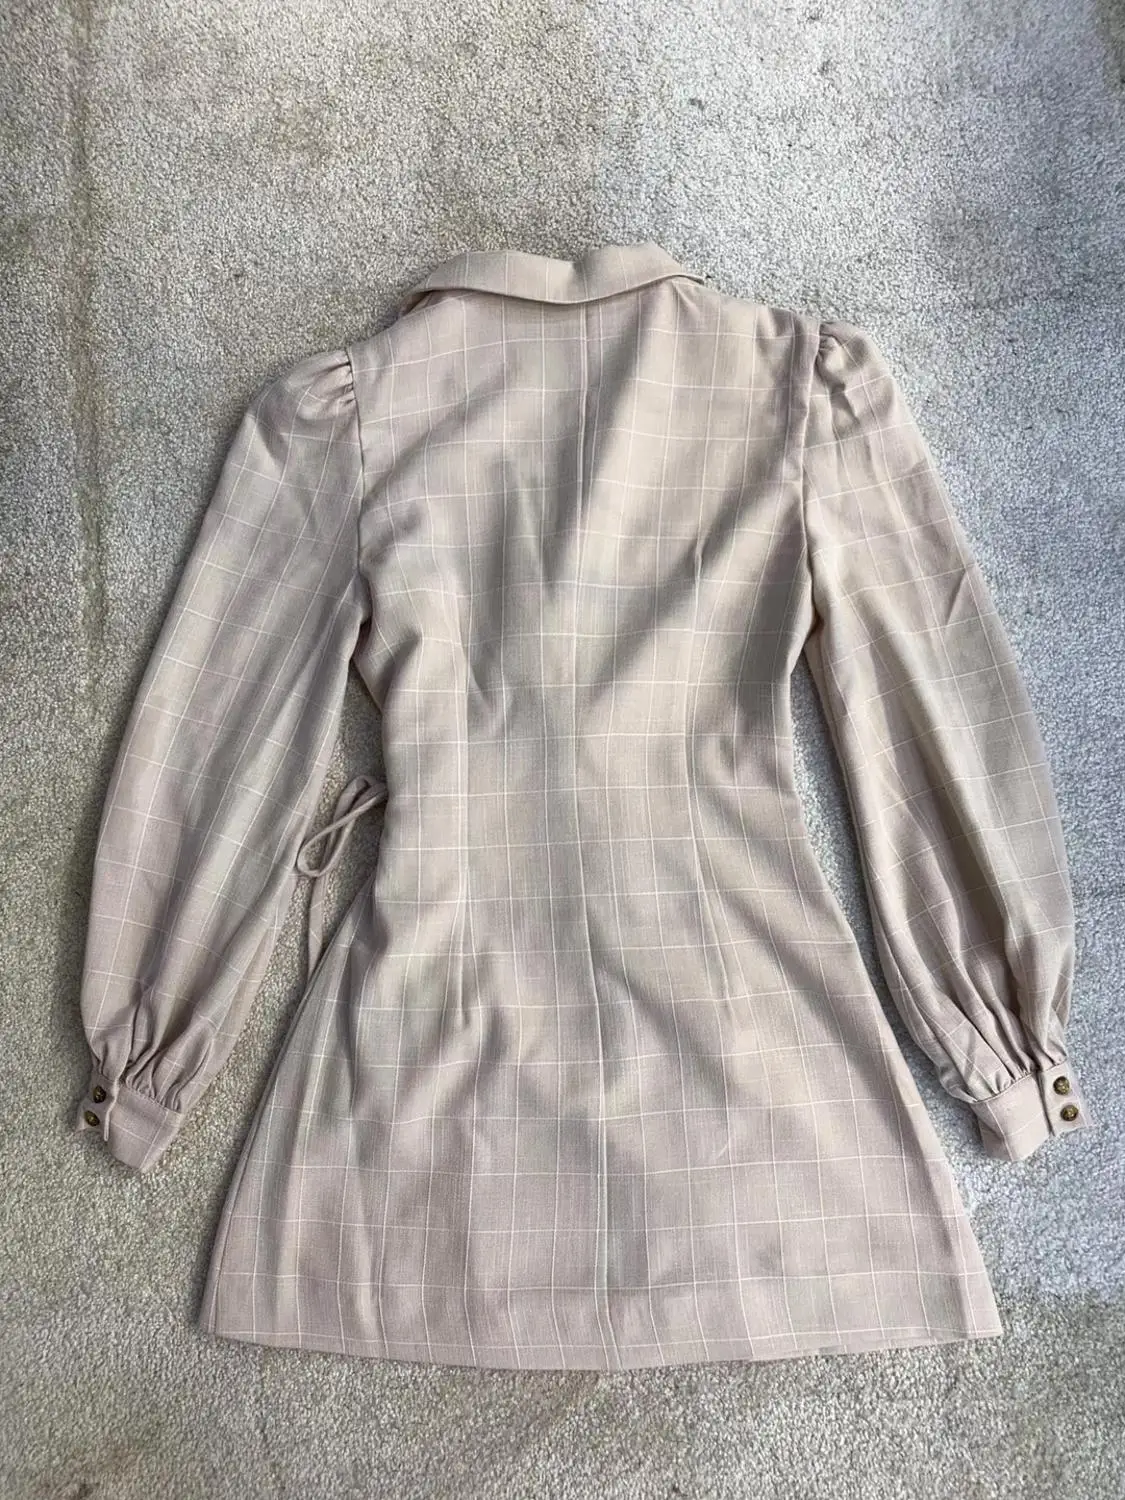 Осень французский темперамент v-образным вырезом шнуровкой обертывание платье офисный костюм пальто